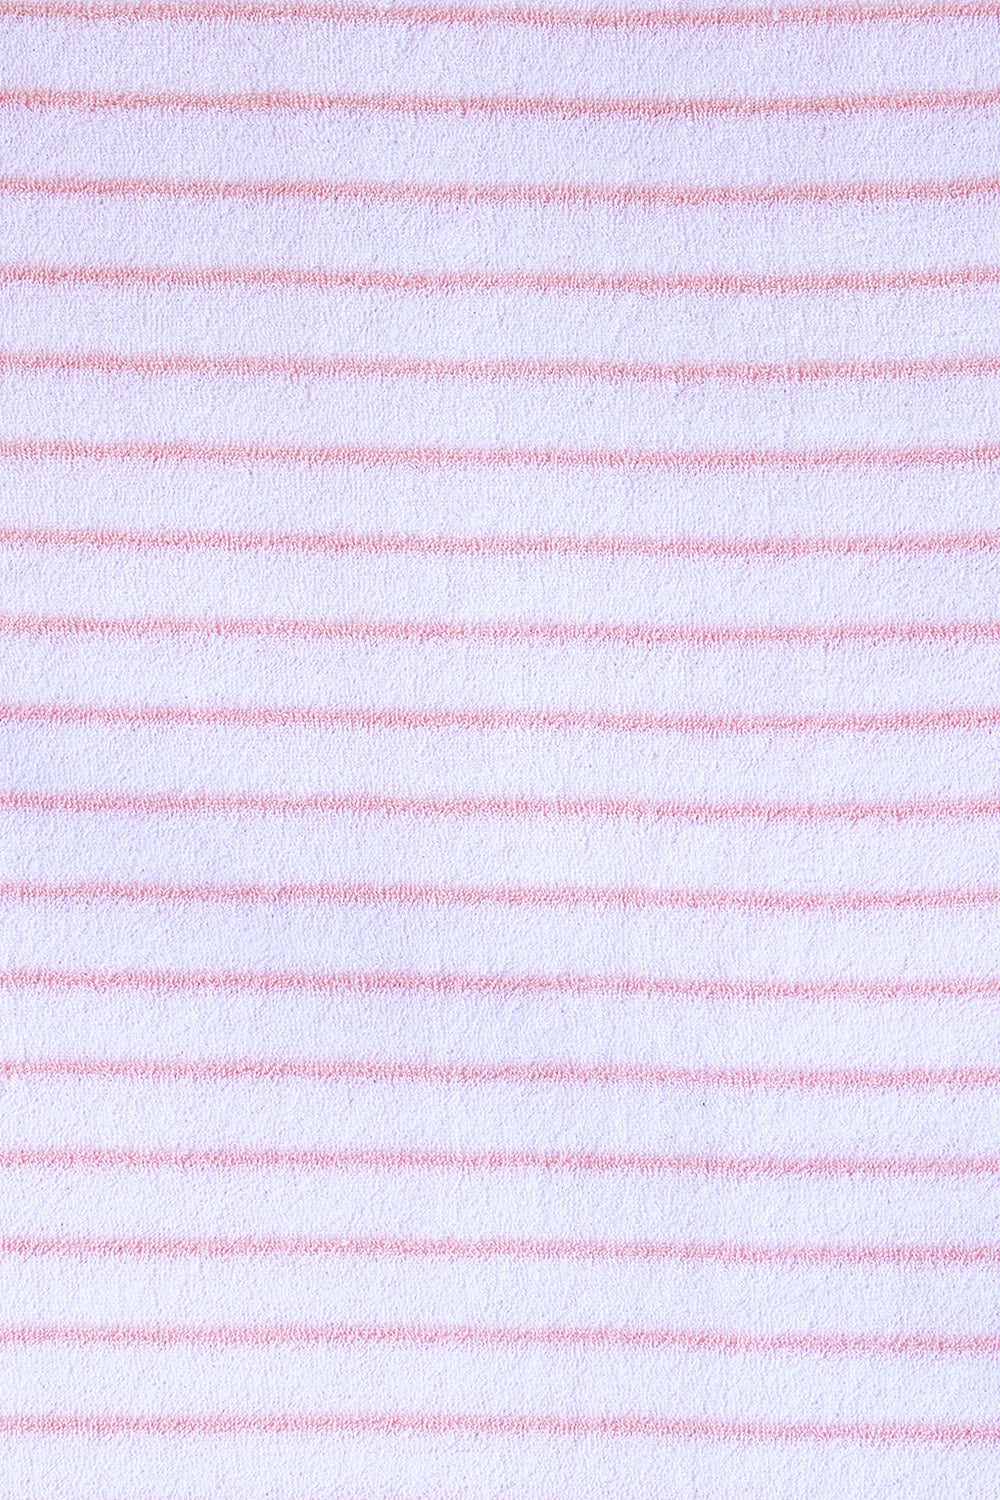 Children's Hooded Towel Robe - White/Rose